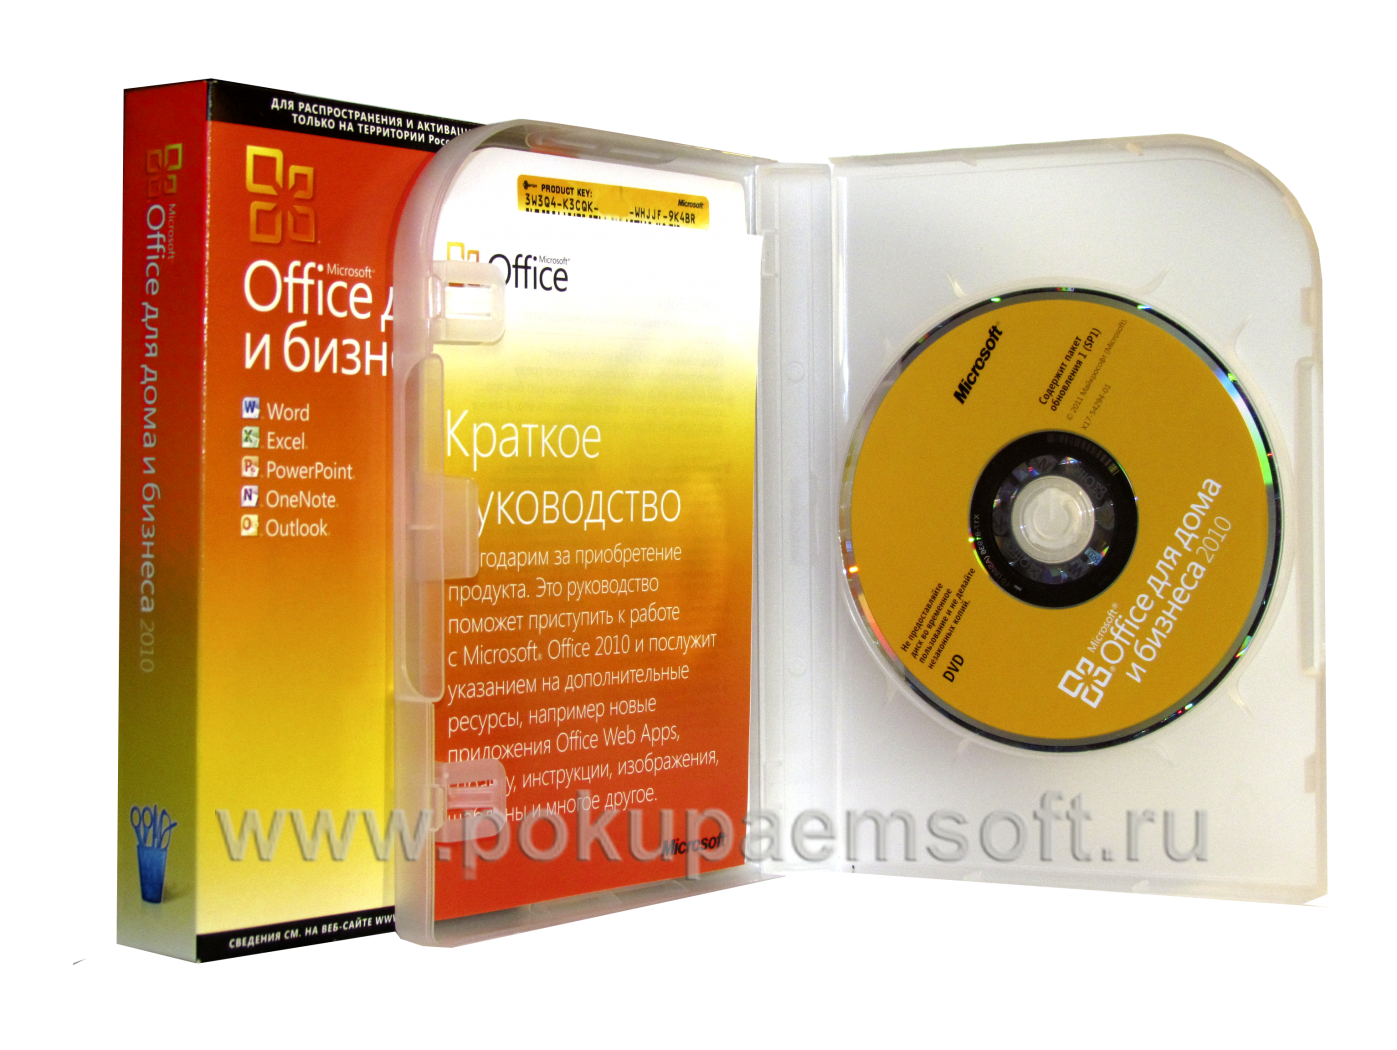 Pokupaemsoft.ru покупаем Office 2010 вскрытый